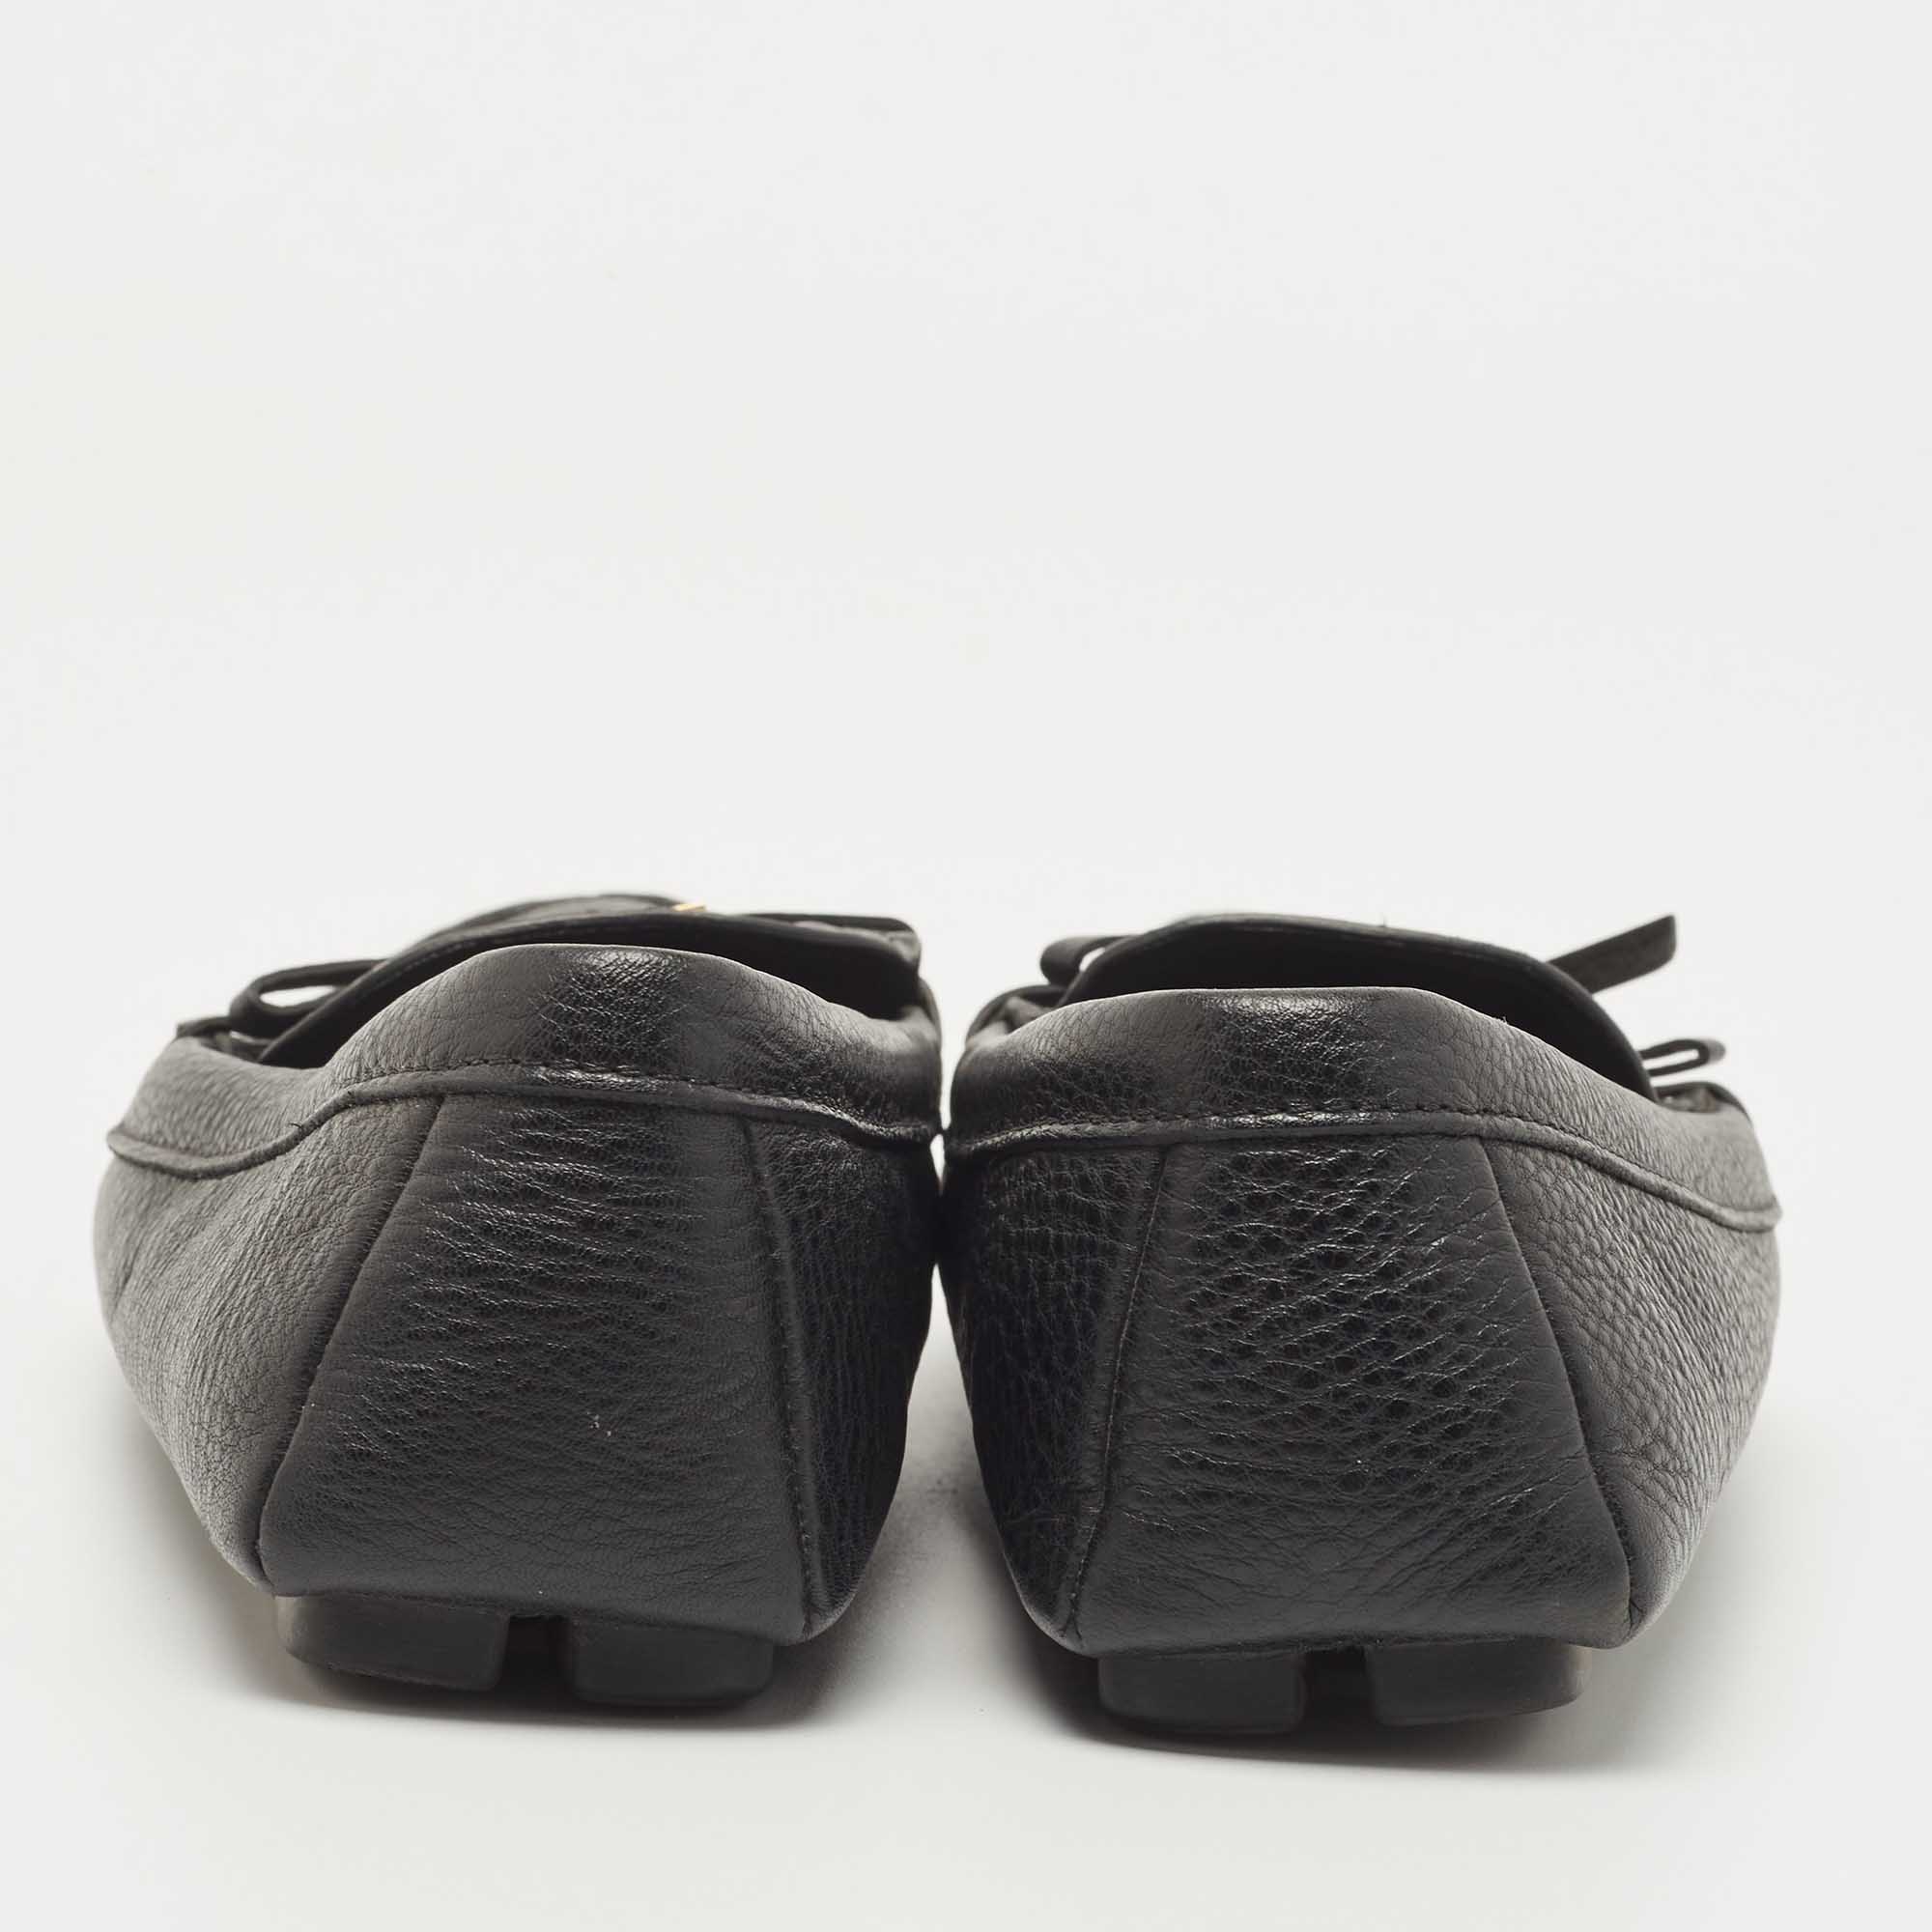 Prada Black Leather Logo Embellished Bow Slip On Loafers Size 38.5